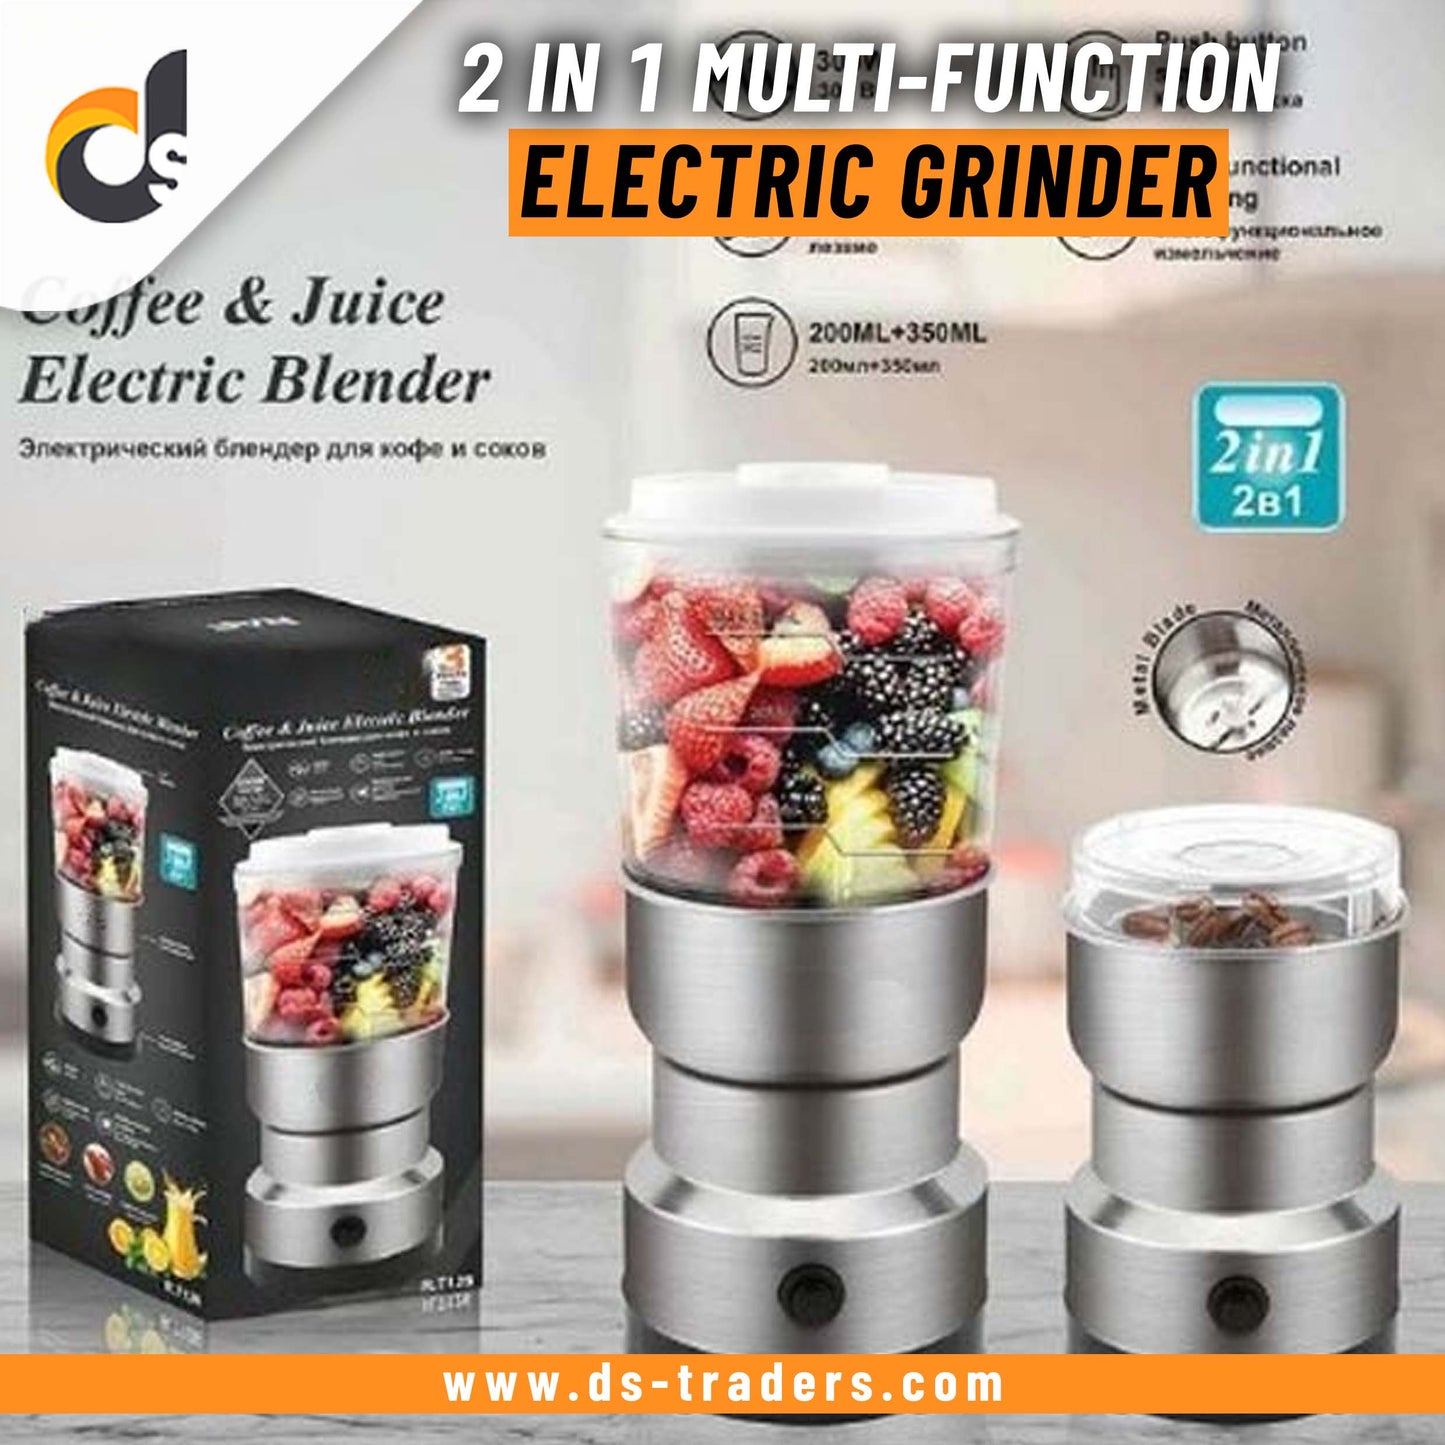 2-in-1 Multi-Function Electric Grinder & Juicer Blender